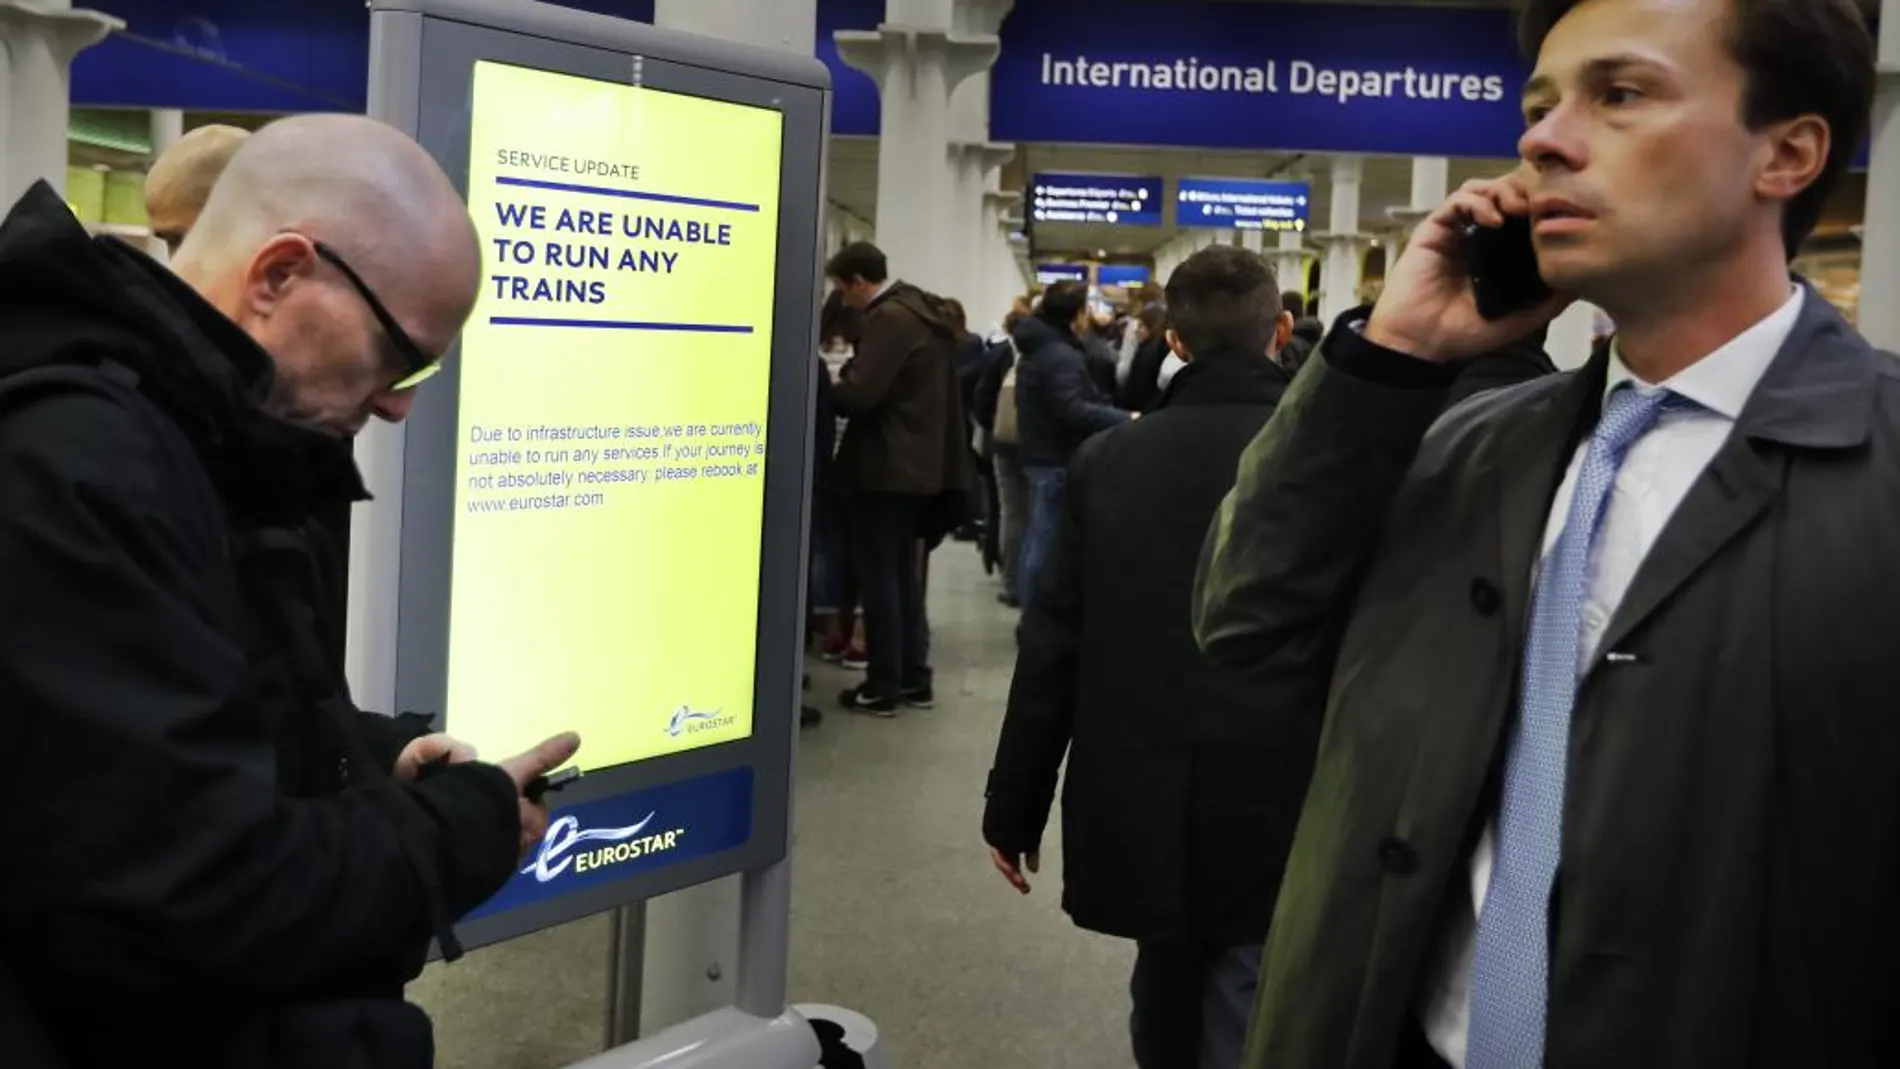 Viajeros que tenían billete para alguno de los trenes cancelados esperan en la terminal de Londres, St. Pancras